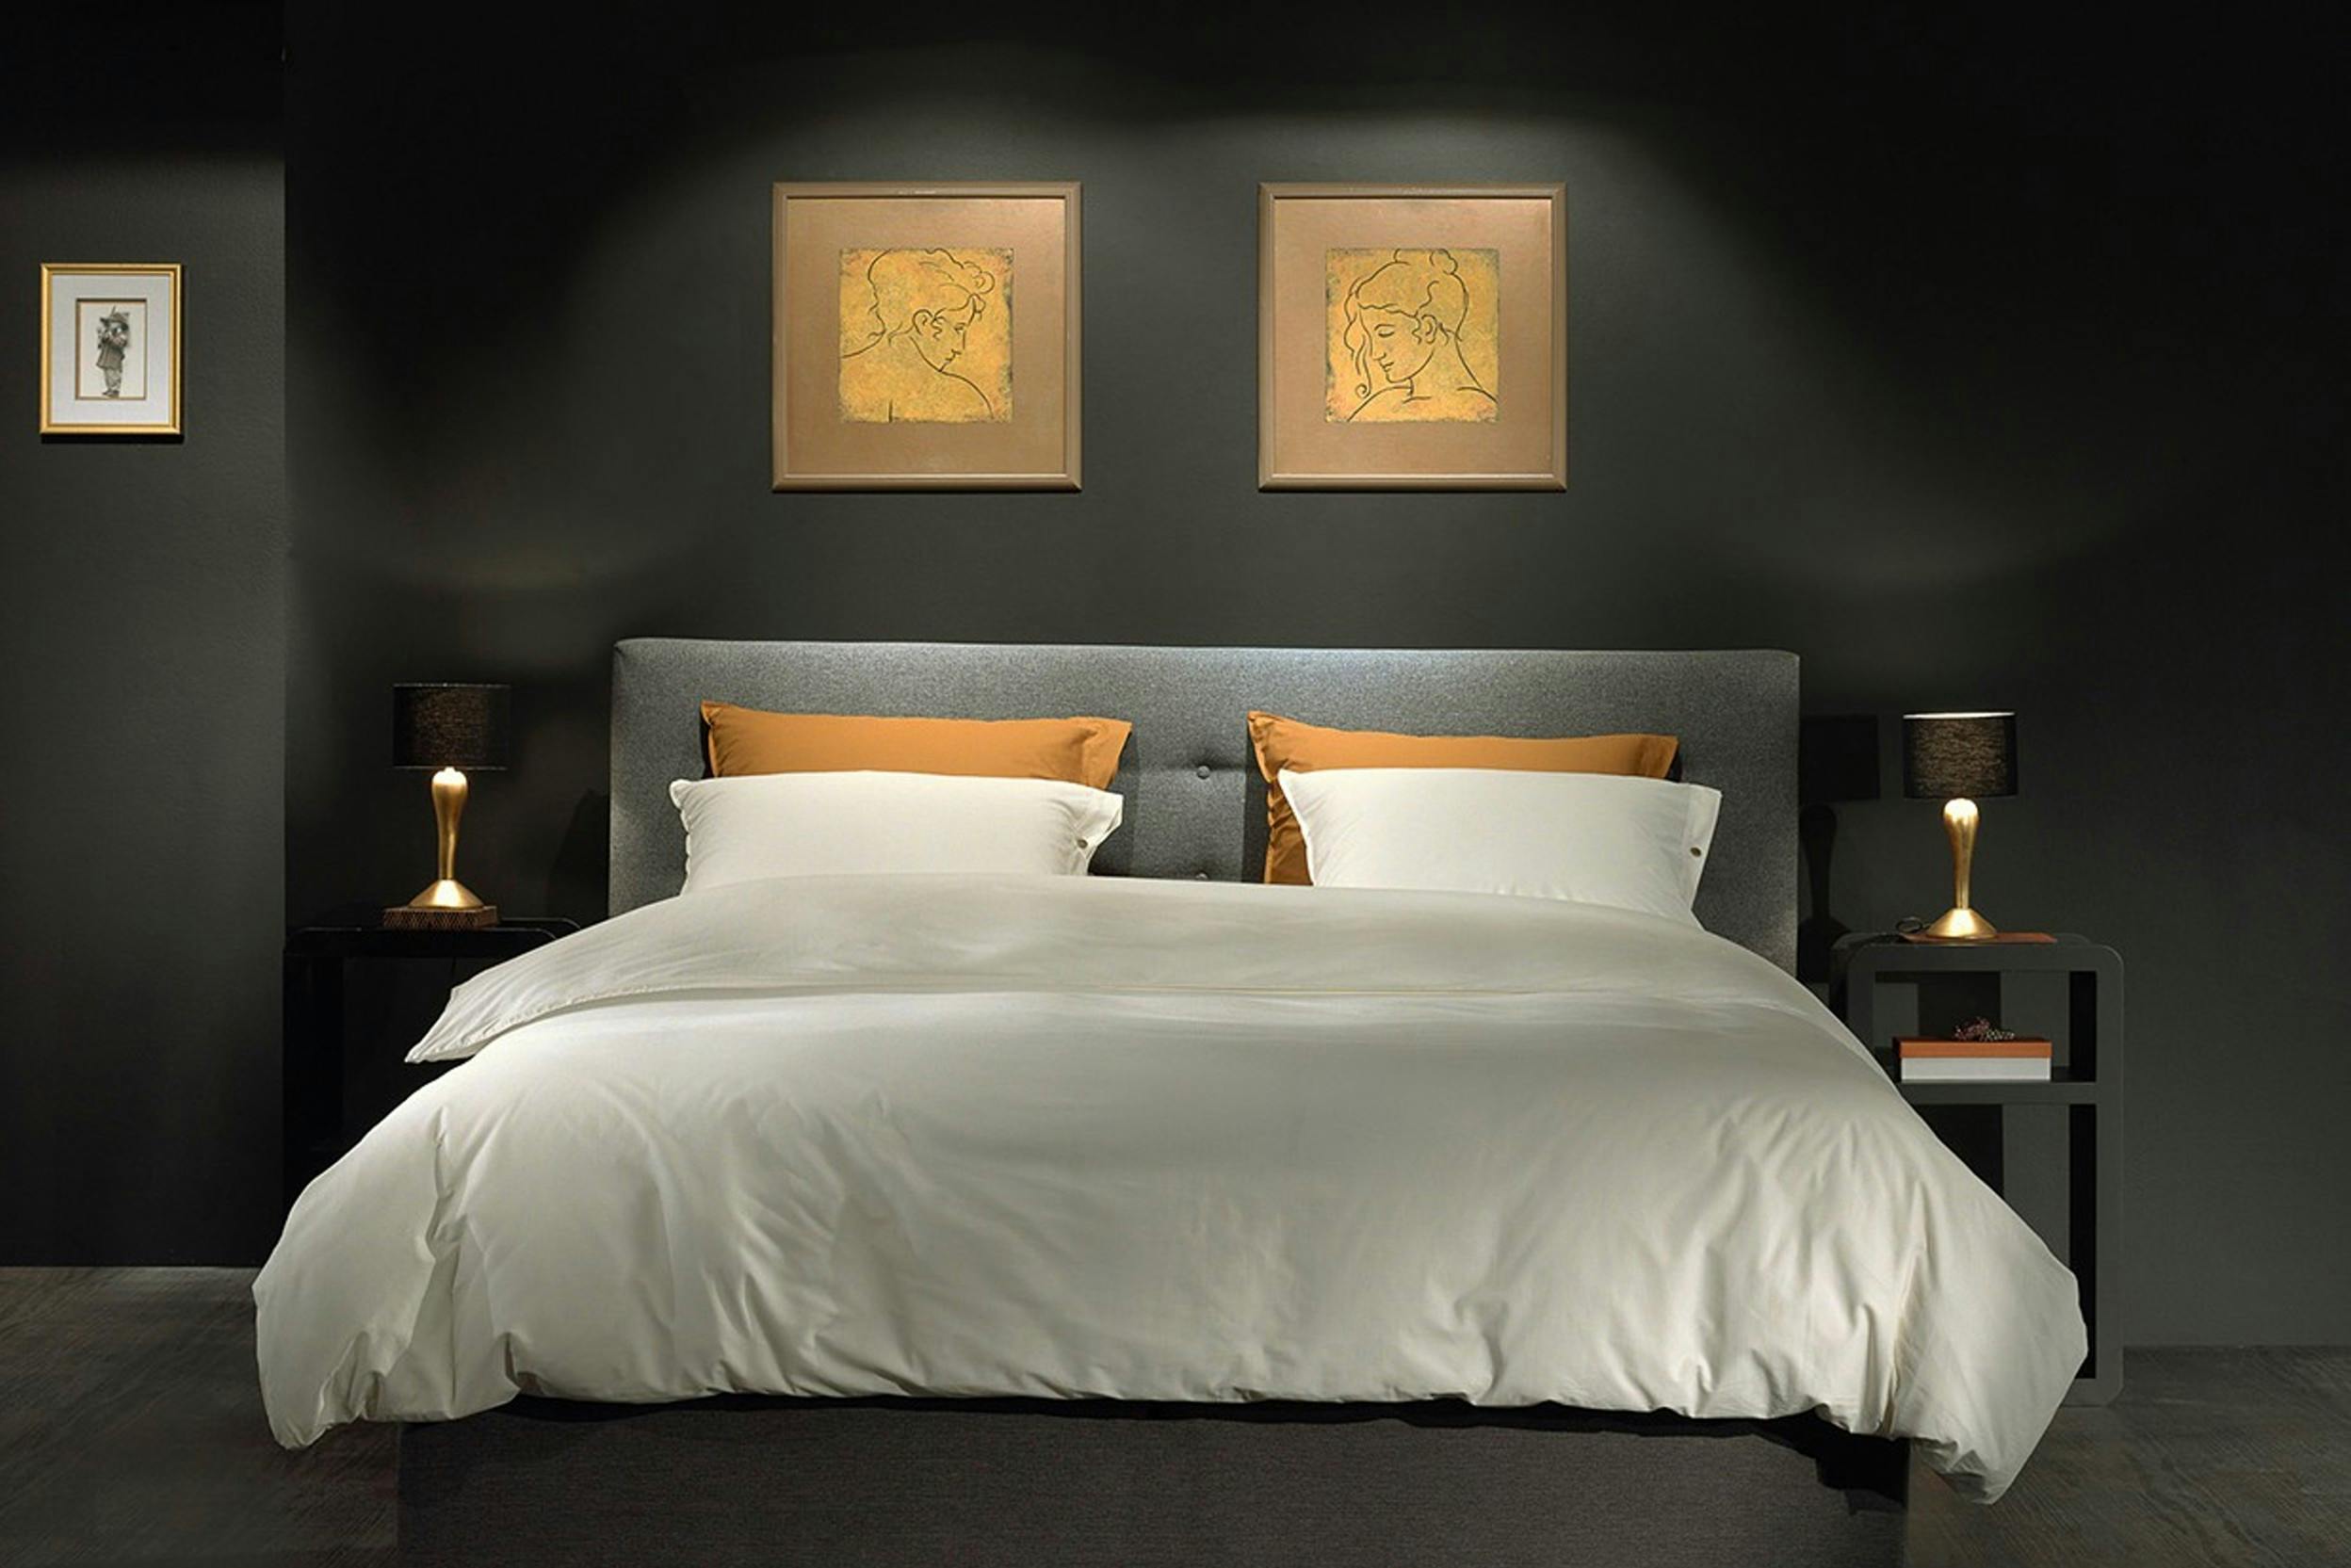 Grijs gestoffeerd bed met wit en geel beddengoed tegen zwarte achterwand met uitgelichte schilderijtjes, aan weerszijden nachtkastjes met schemerlampjes